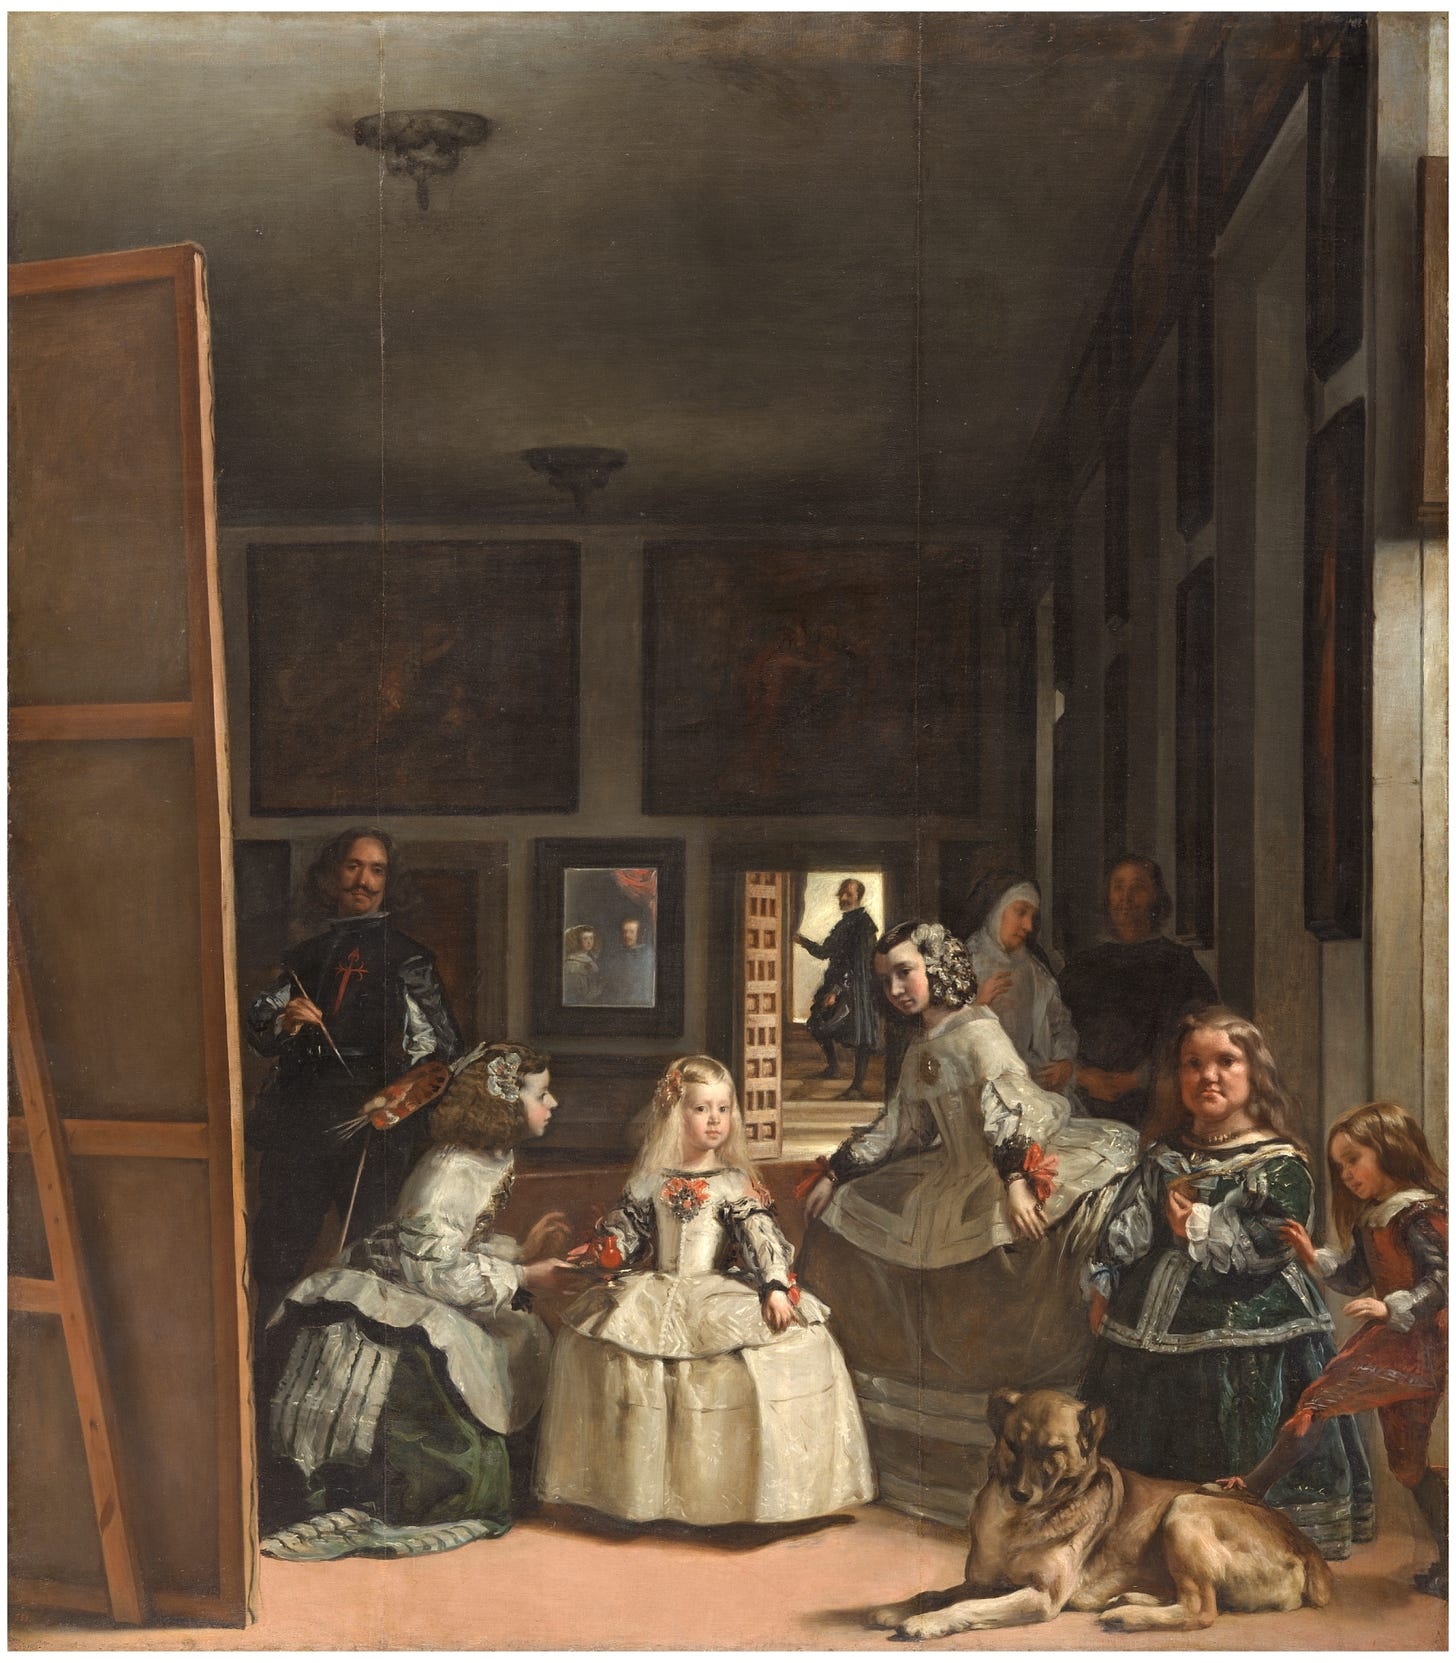 Las Meninas - The Collection - Museo Nacional del Prado